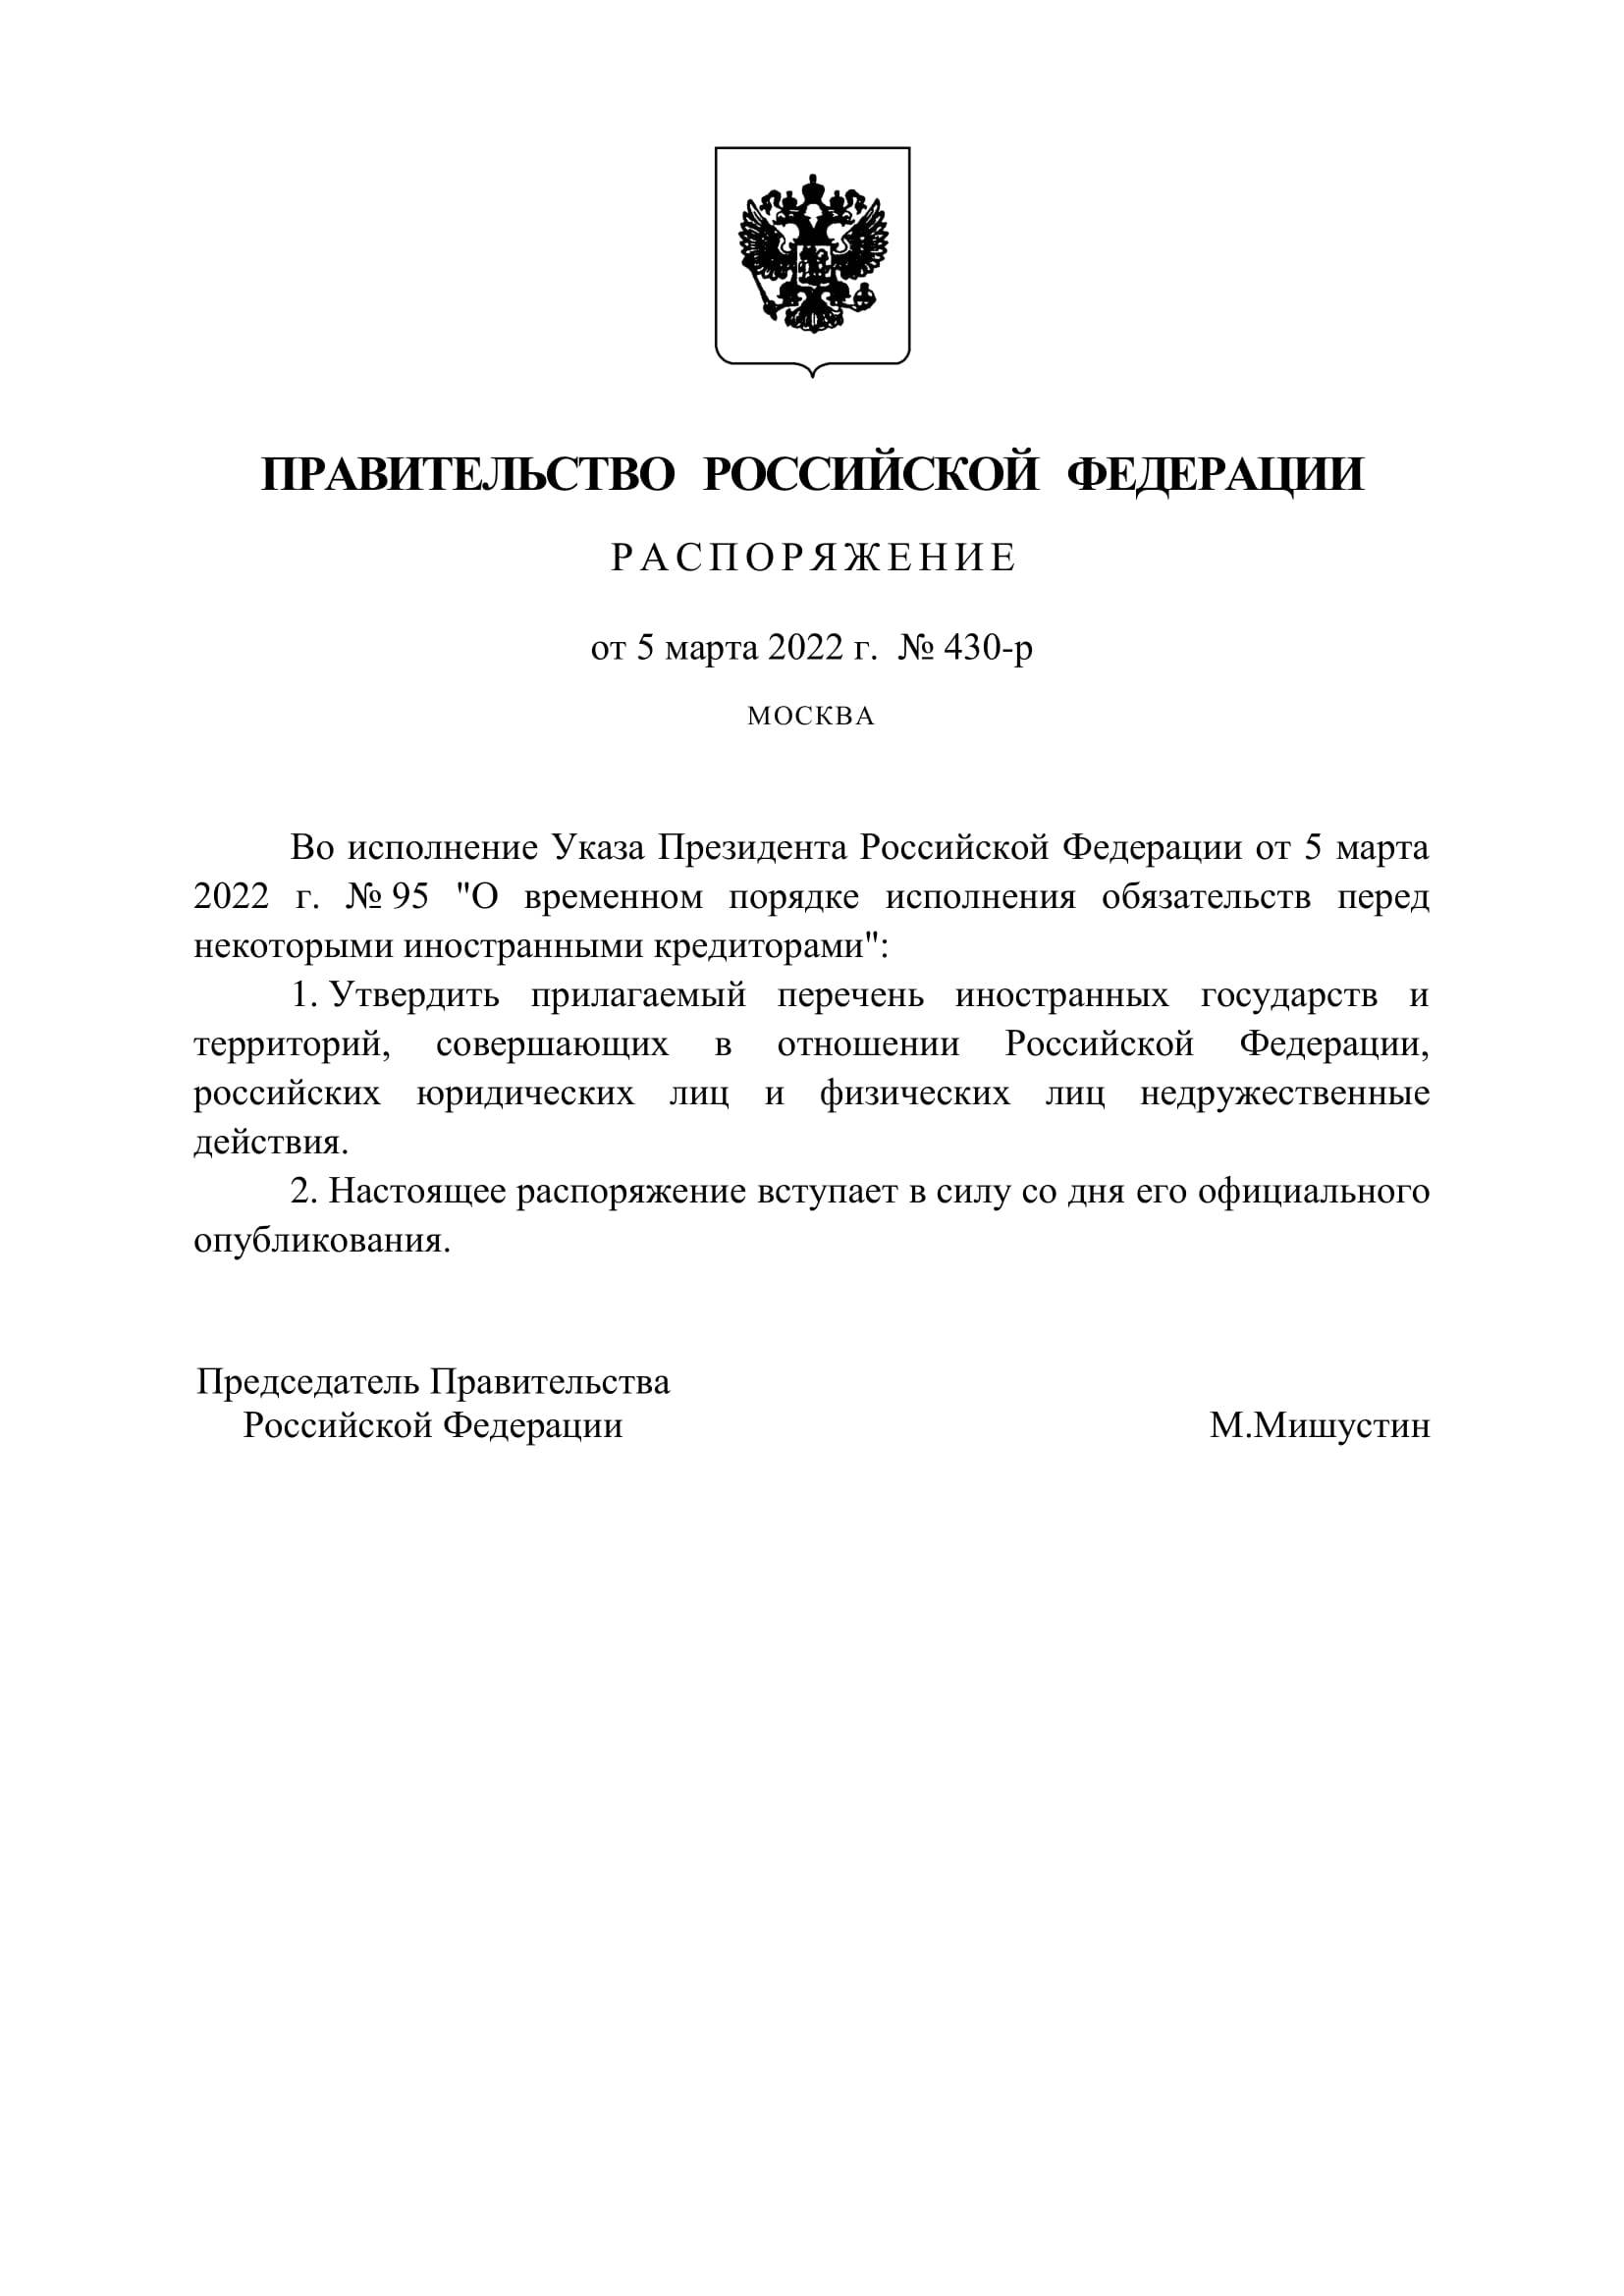 Руското правителство утвърди списък на неприятелски държави - България и Северна Македония са в него